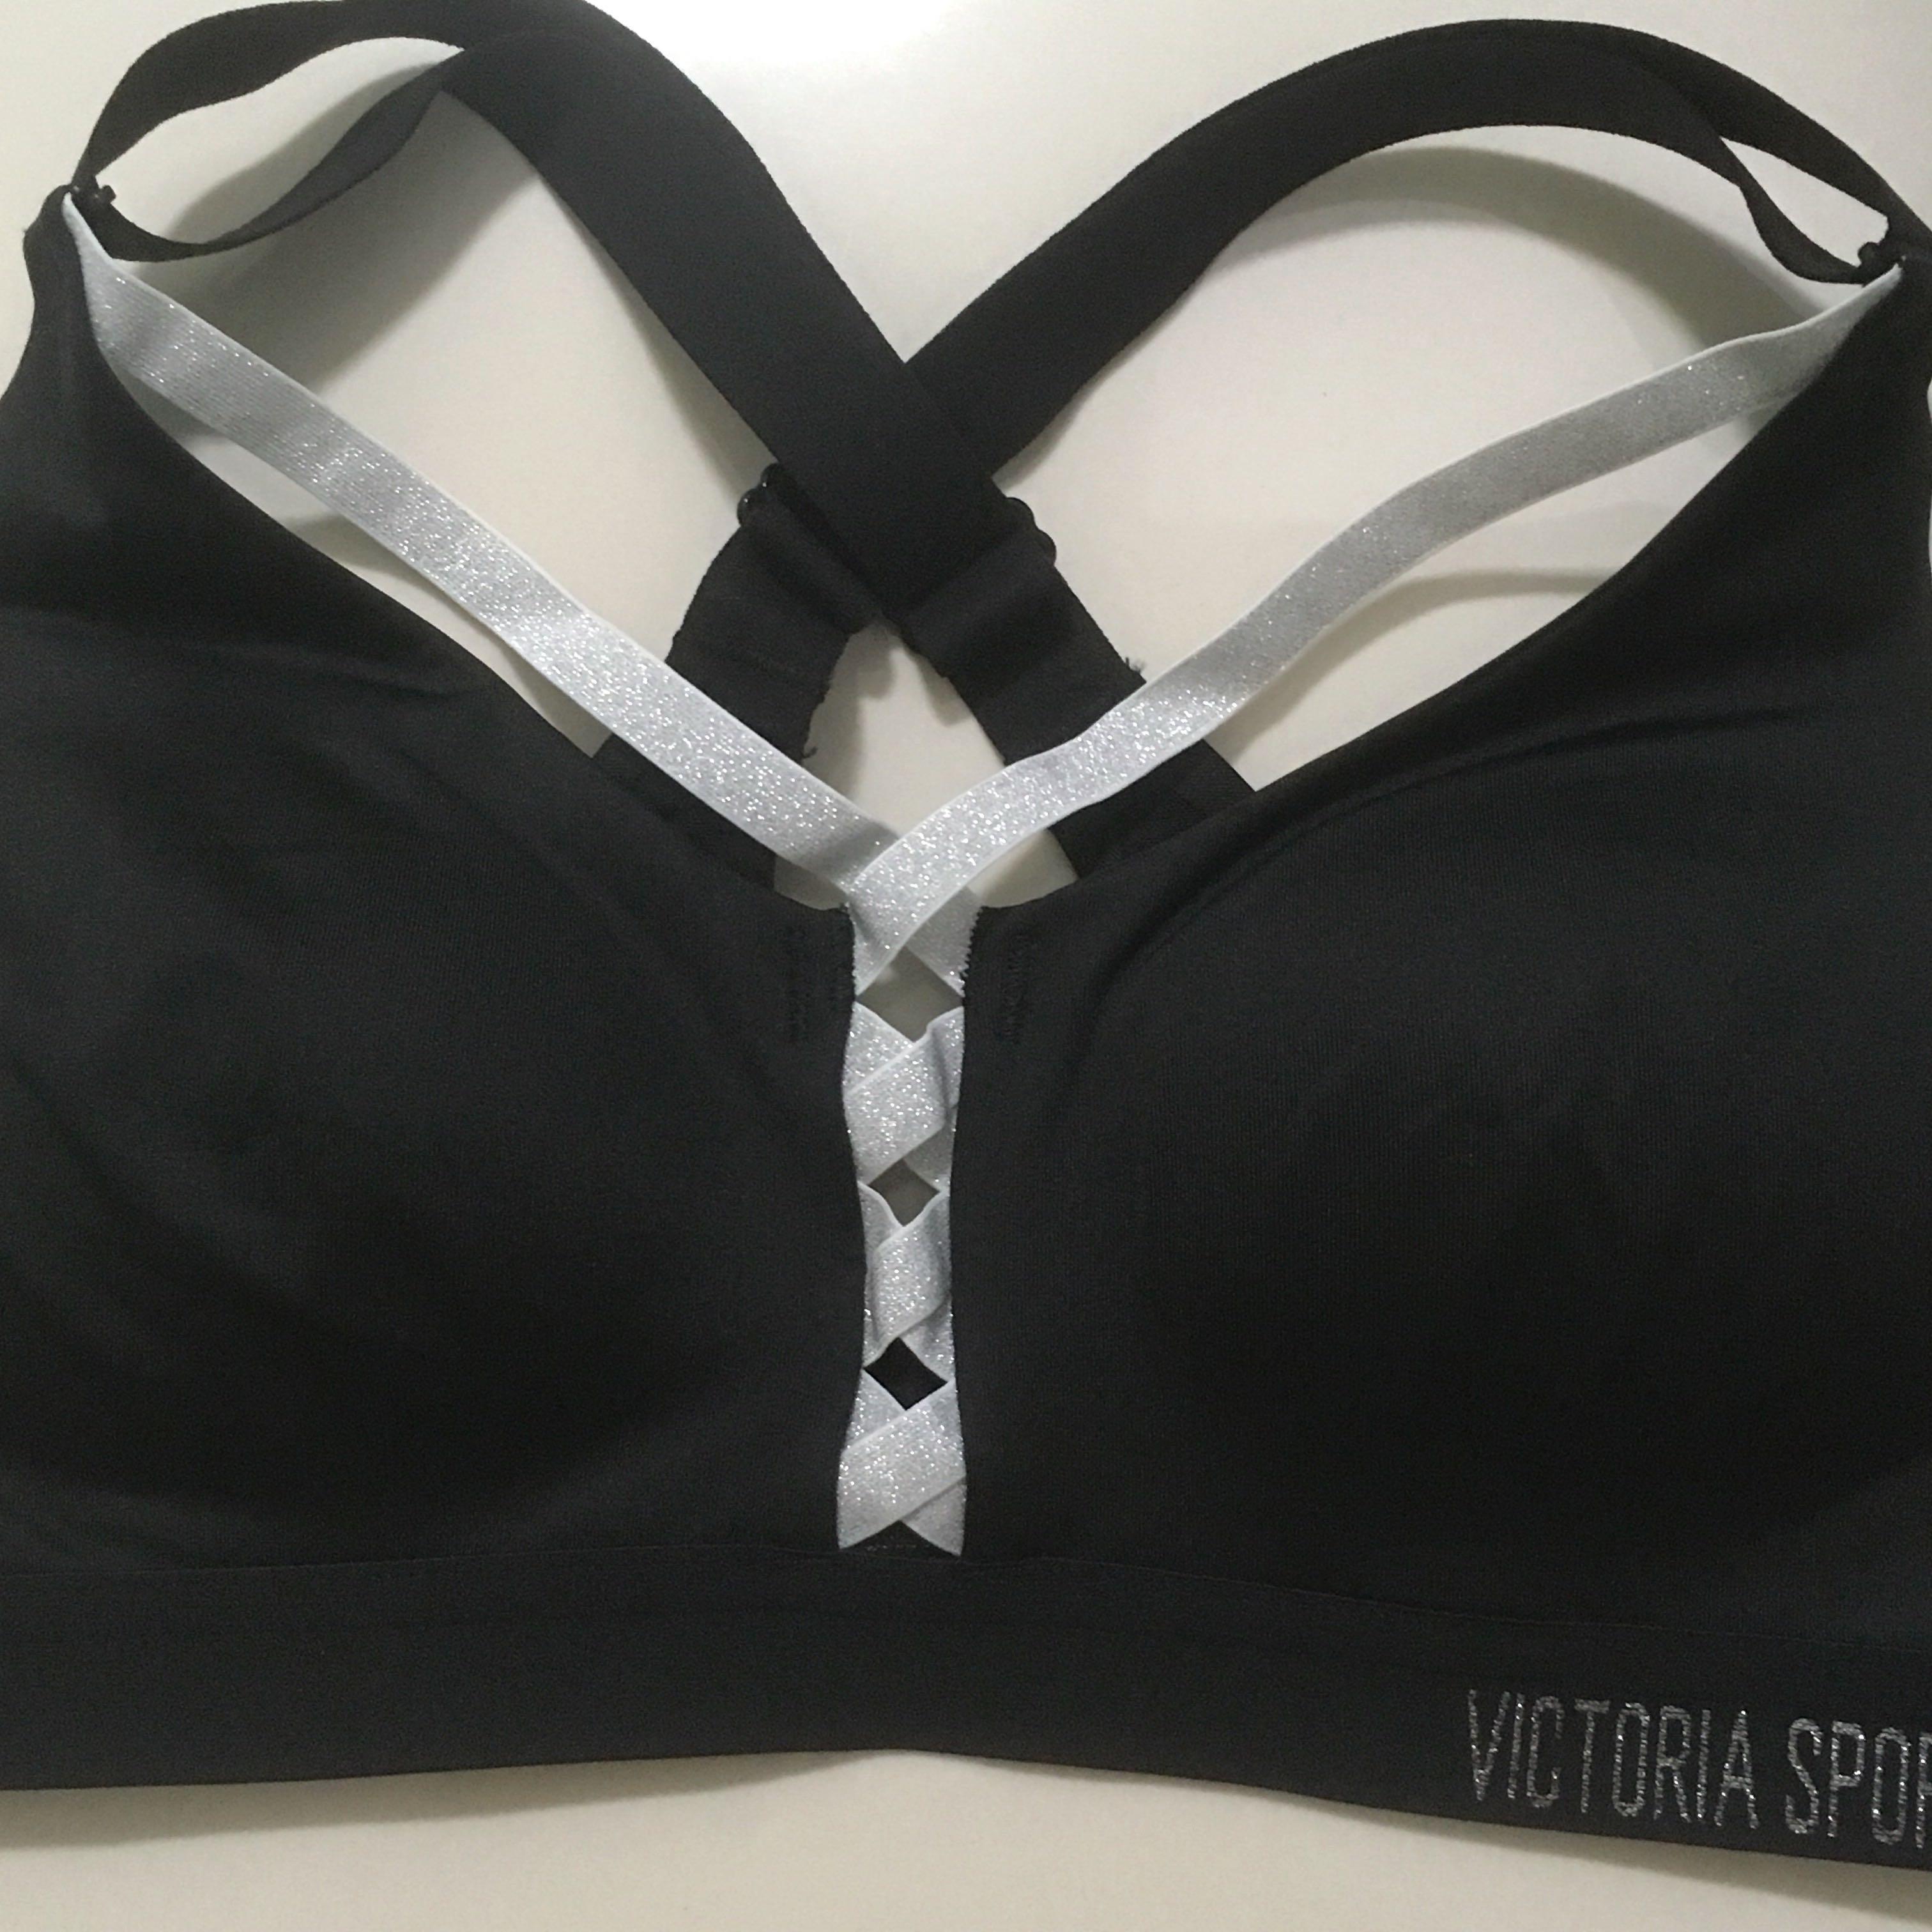 Victoria's Secret, Intimates & Sleepwear, Victorias Secret Lightweight  Sports Bra 32b